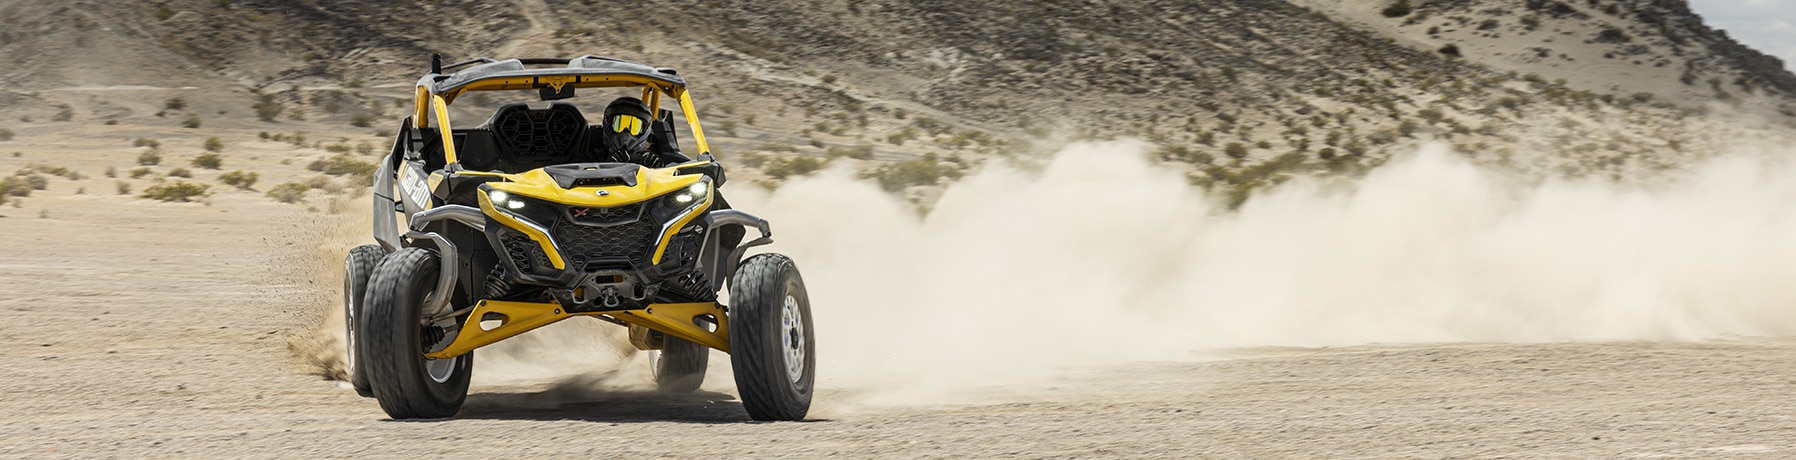 Een rijder rijdt met hoge snelheid op een Can-Am Maverick R in de woestijn